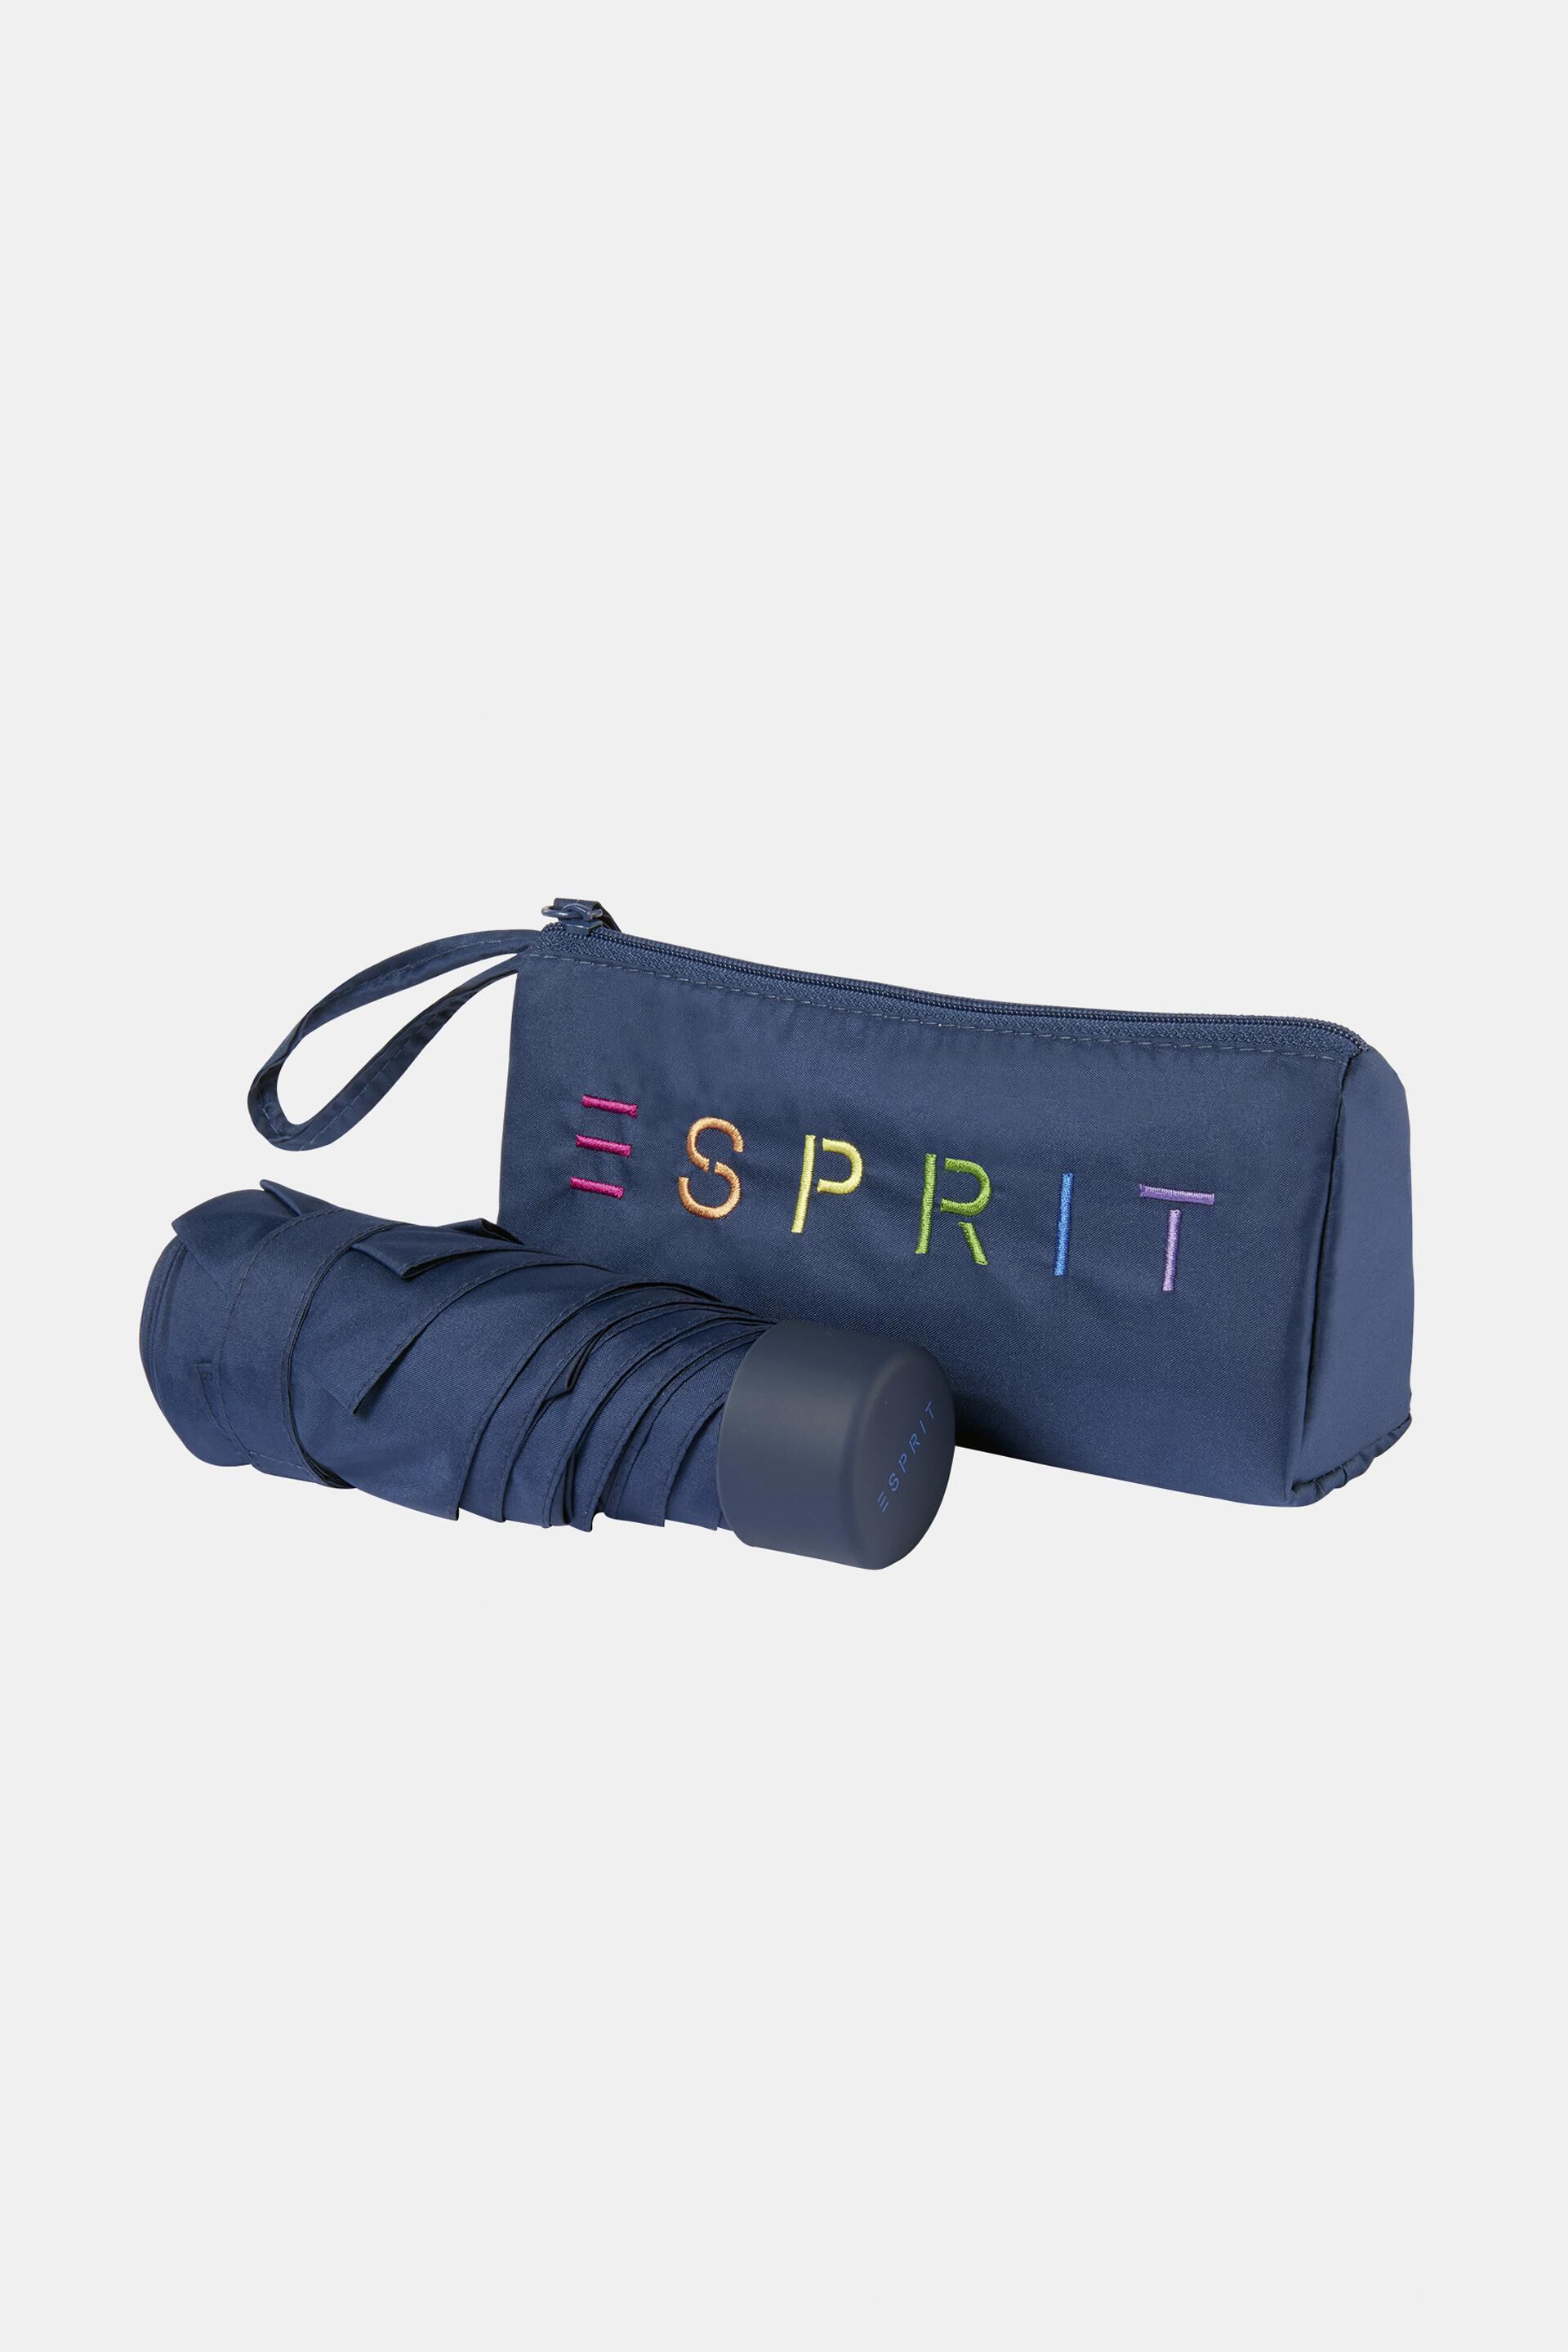 Esprit Online Store Ultra-Mini-Taschenschirm mit Reißverschlusstasche